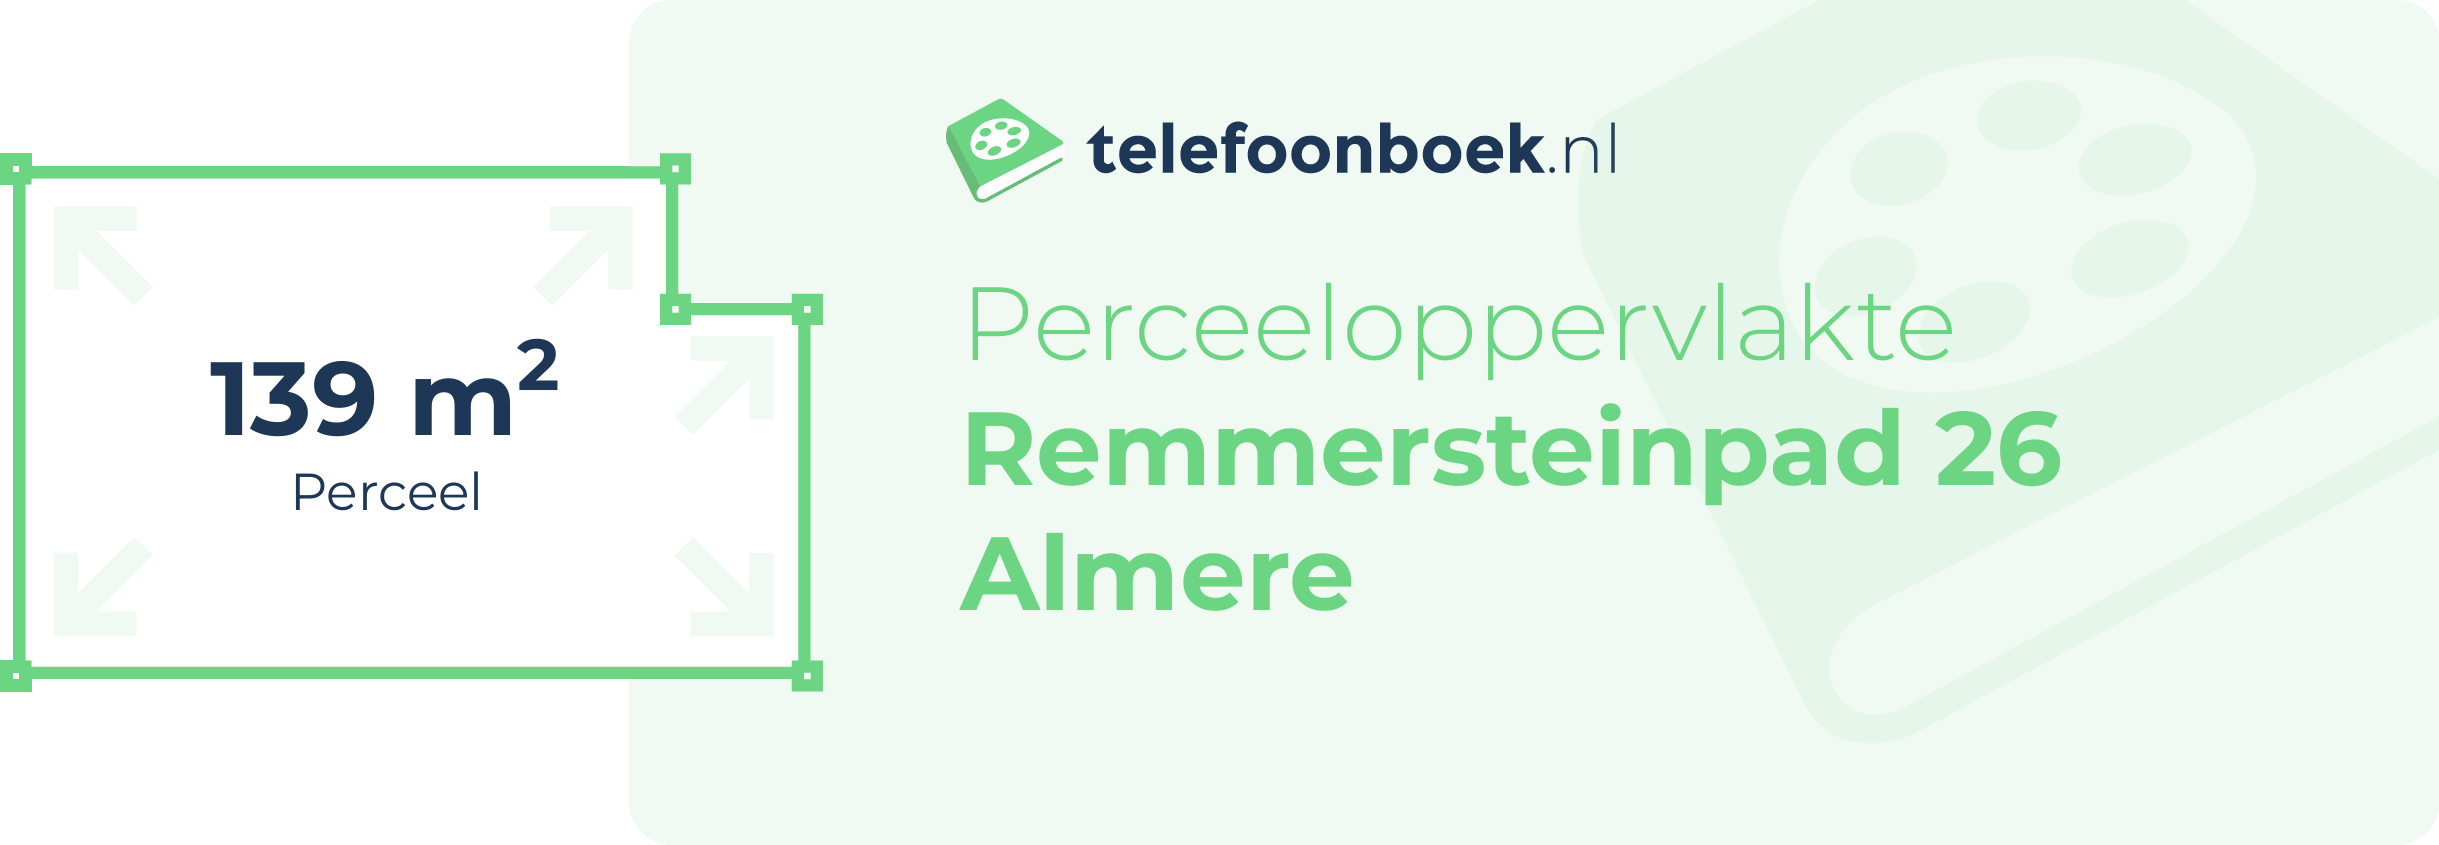 Perceeloppervlakte Remmersteinpad 26 Almere